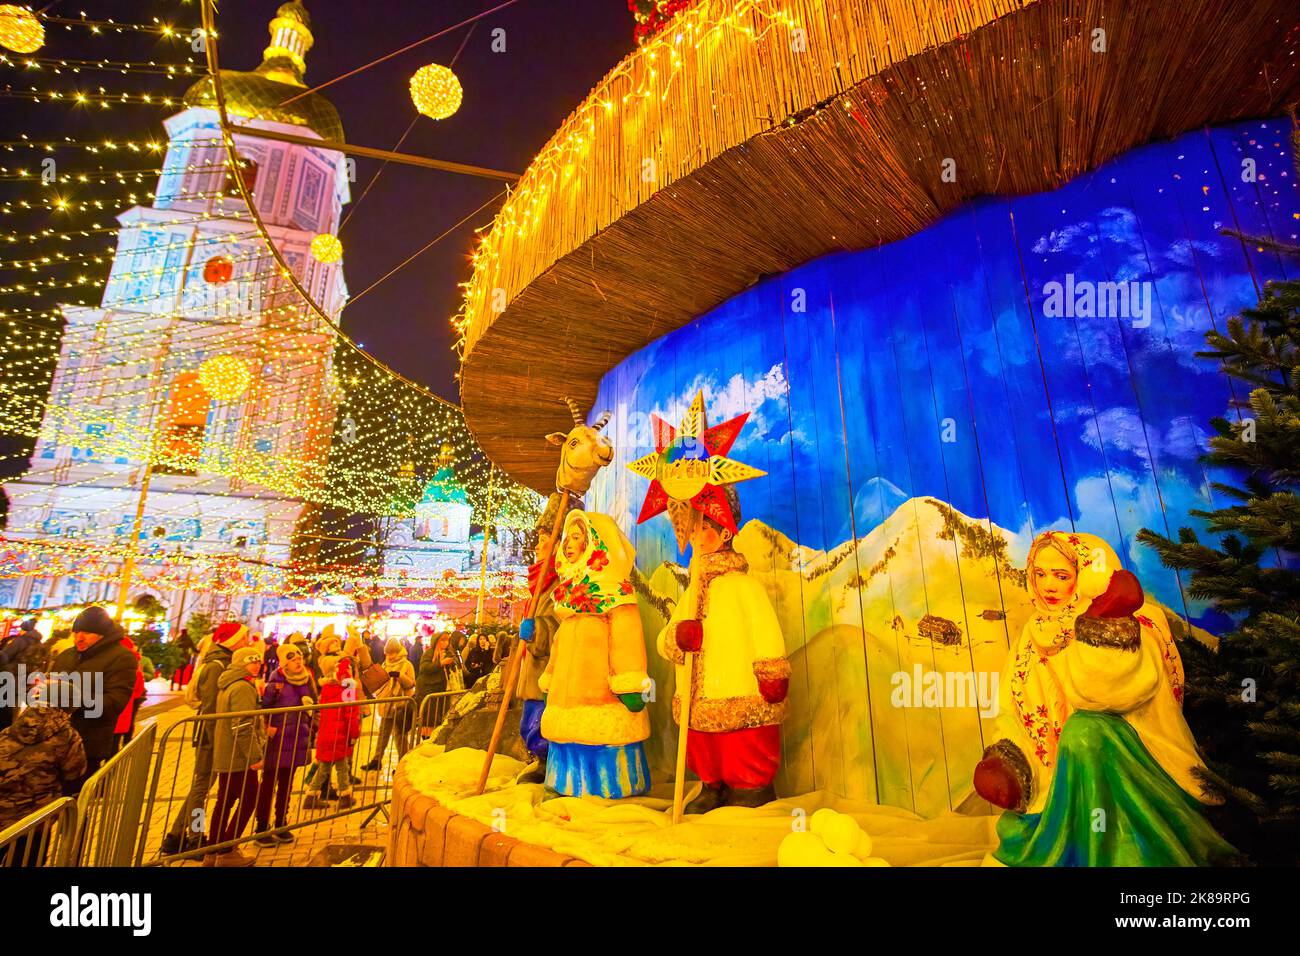 KIEV, UCRAINA - 28 DICEMBRE 2021: Fiera di Natale con sculture colorate in legno per bambini e carolieri con stelle e palle di neve, Piazza Sophia, il 2 dicembre Foto Stock